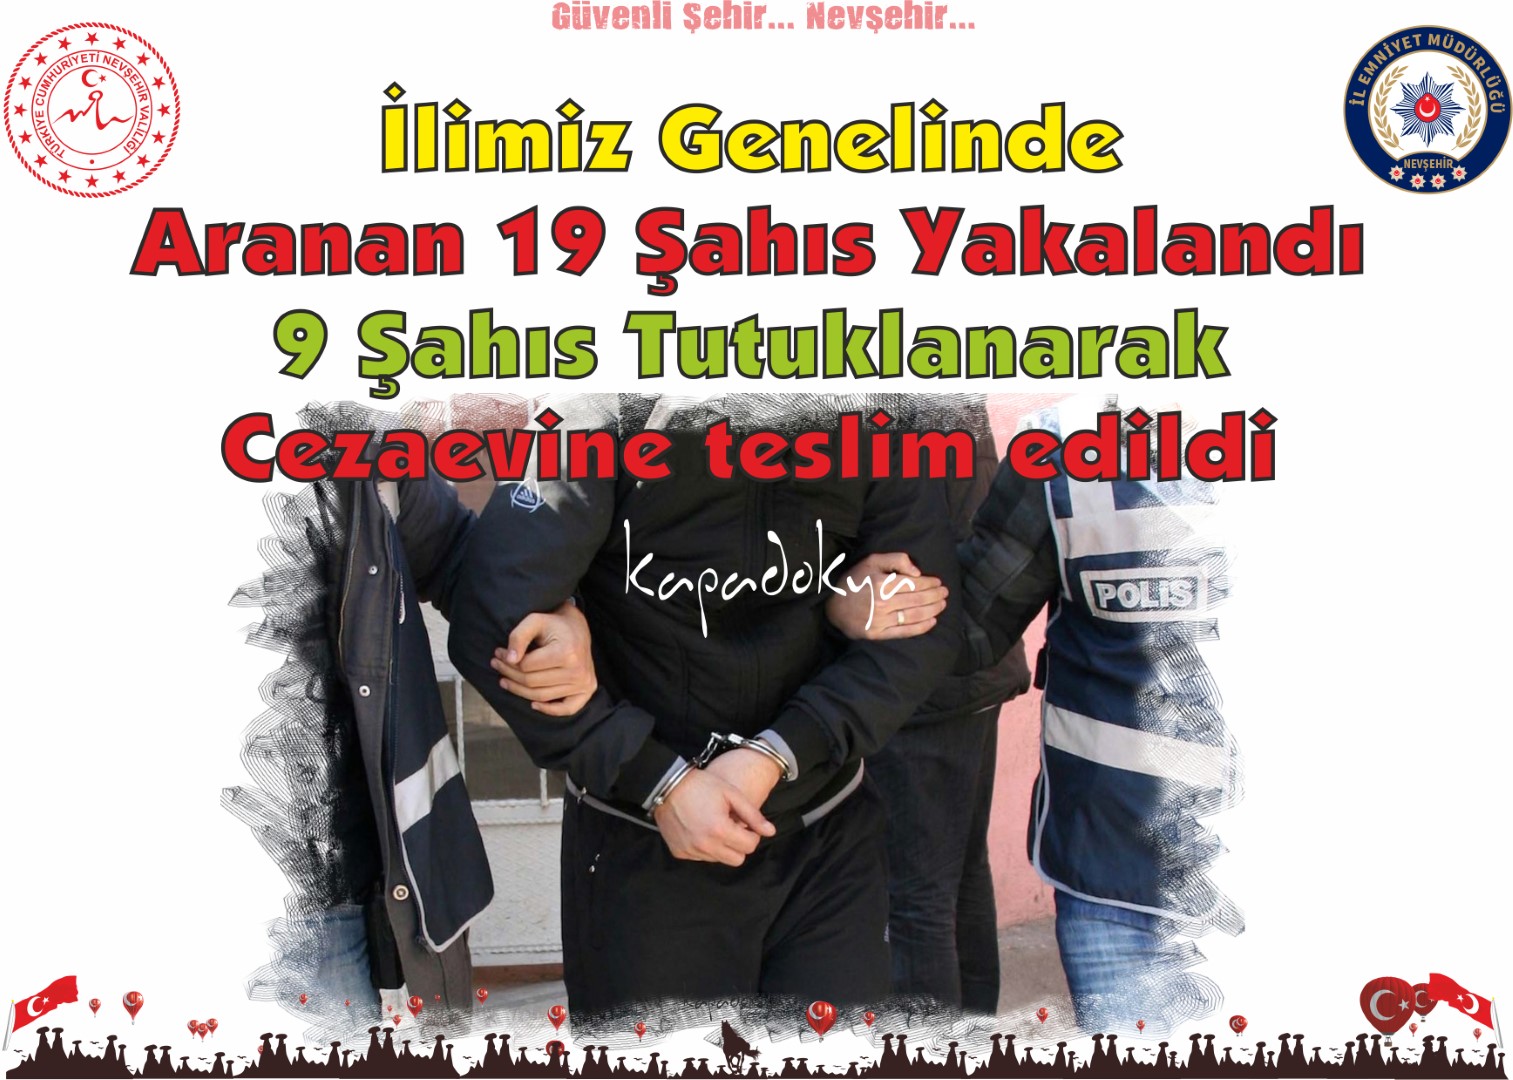 Nevşehir Genelinde Aranan 19 Şahıs Yakalandı 9 Şahıs Tutuklanarak Cezaevine teslim edildi